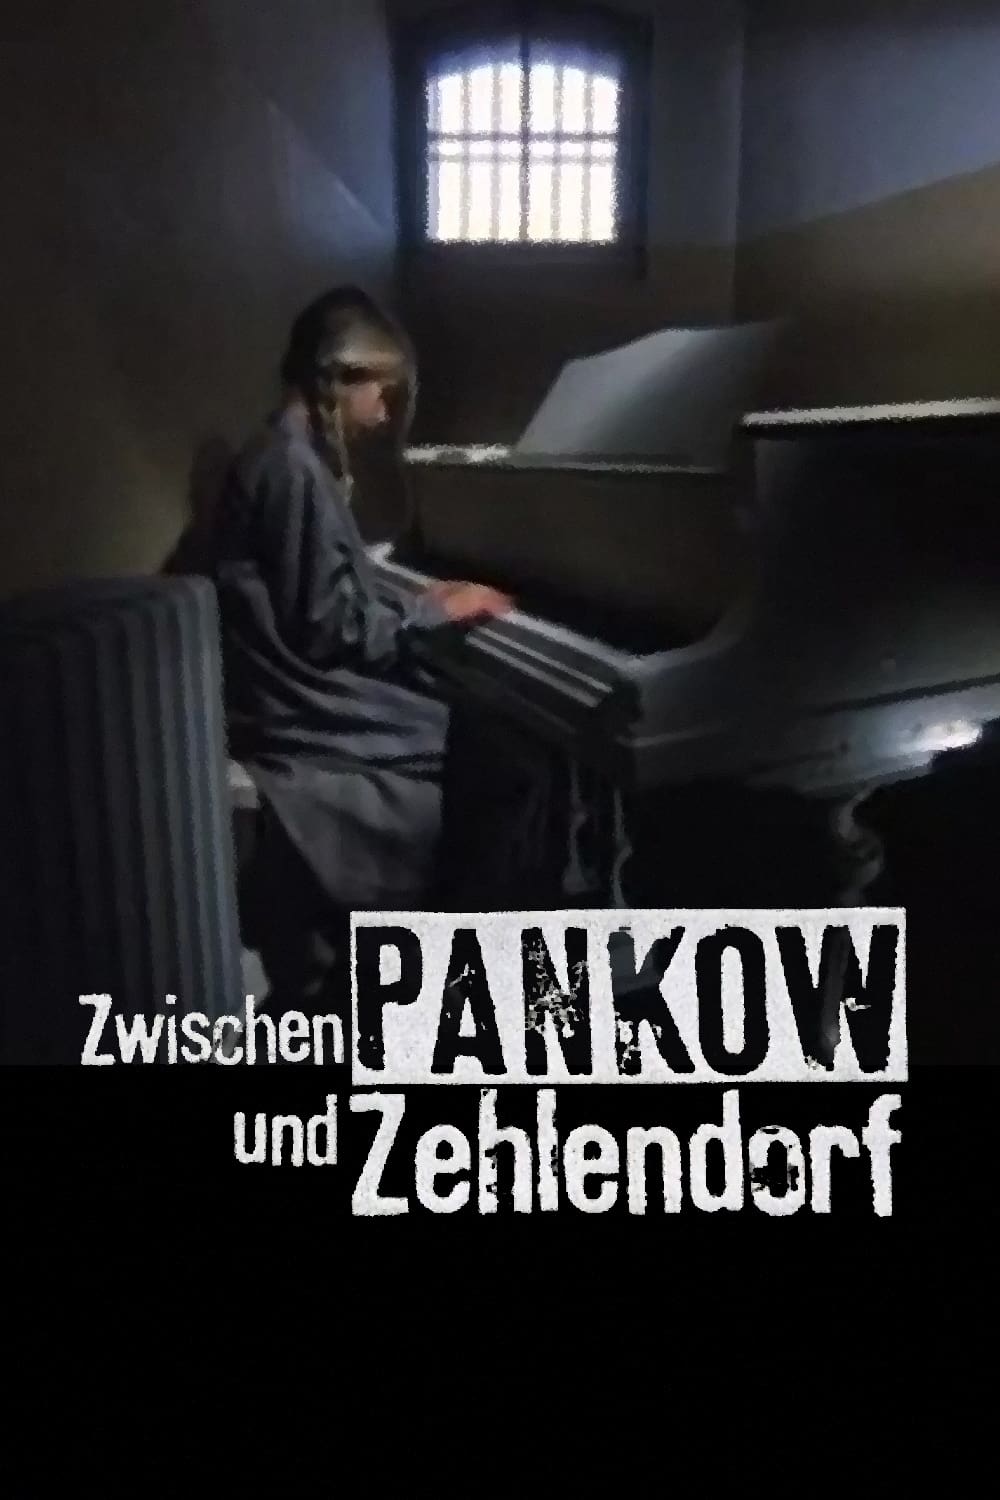 Zwischen Pankow und Zehlendorf